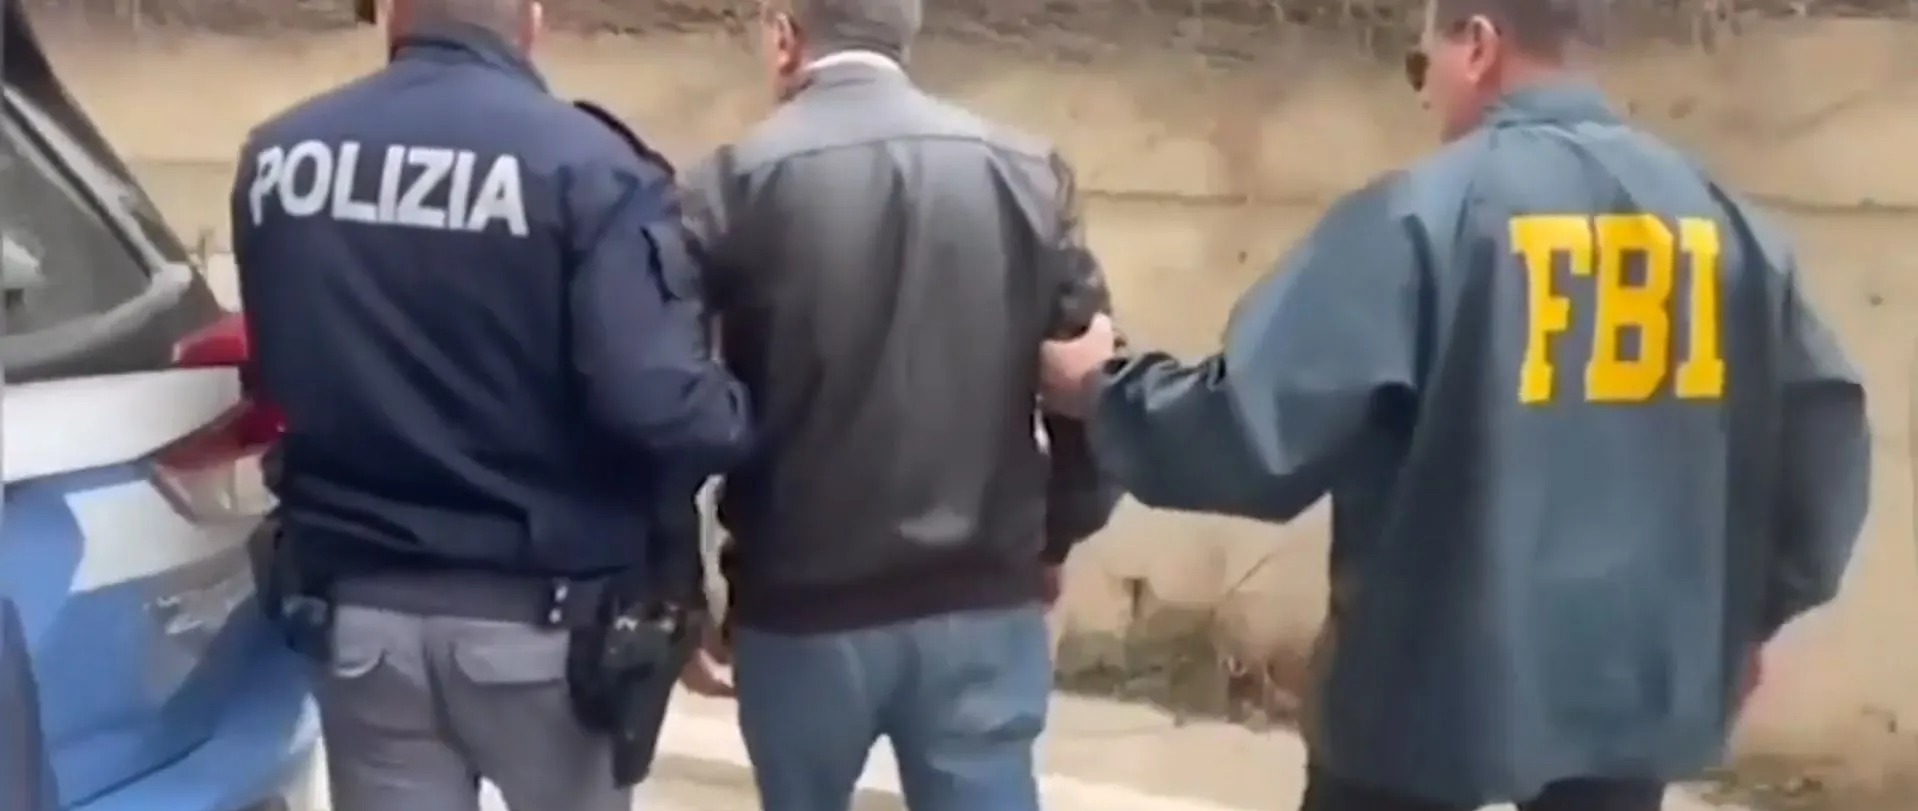 Mutmaßliche Mitglieder werden vom FBI und der örtlichen Polizei in Italien festgenommen